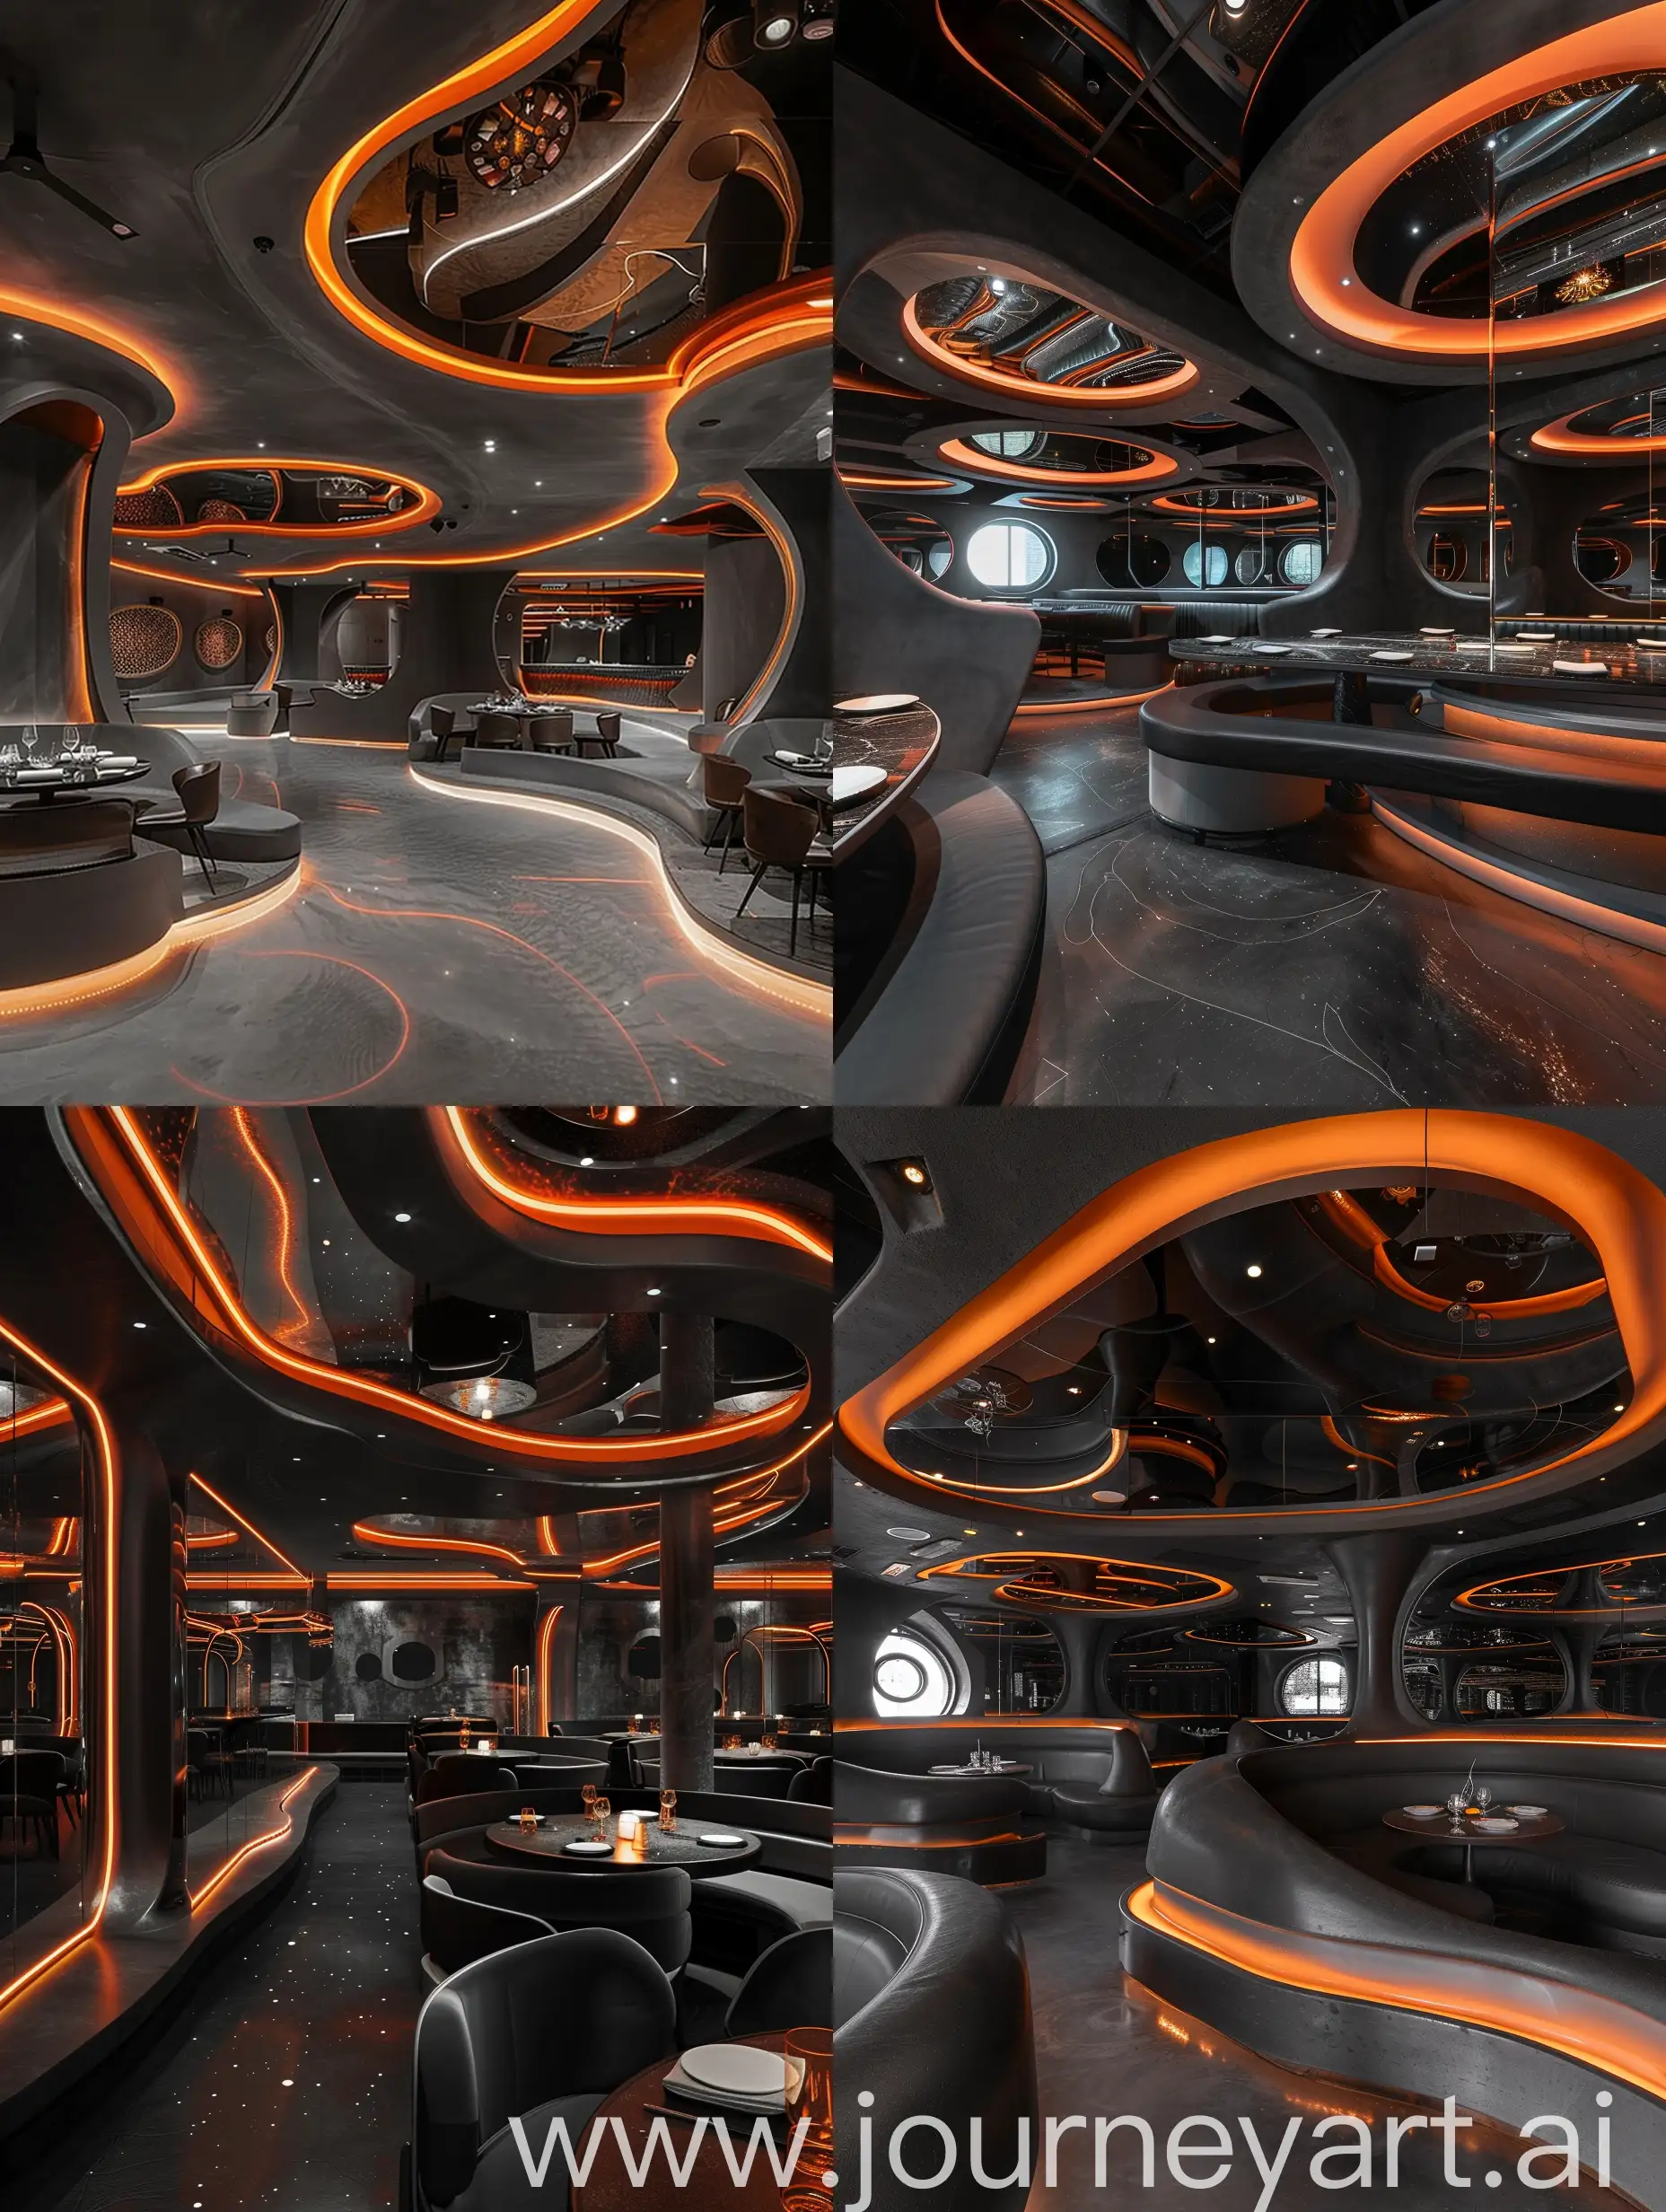 设计一个异形空间的牛扒餐厅，可以用弧线区分就餐区，风格可以参考北京大同烧鸭店的设计风格，主色调为深灰色搭配橙色氛围灯，天花是镜面天花